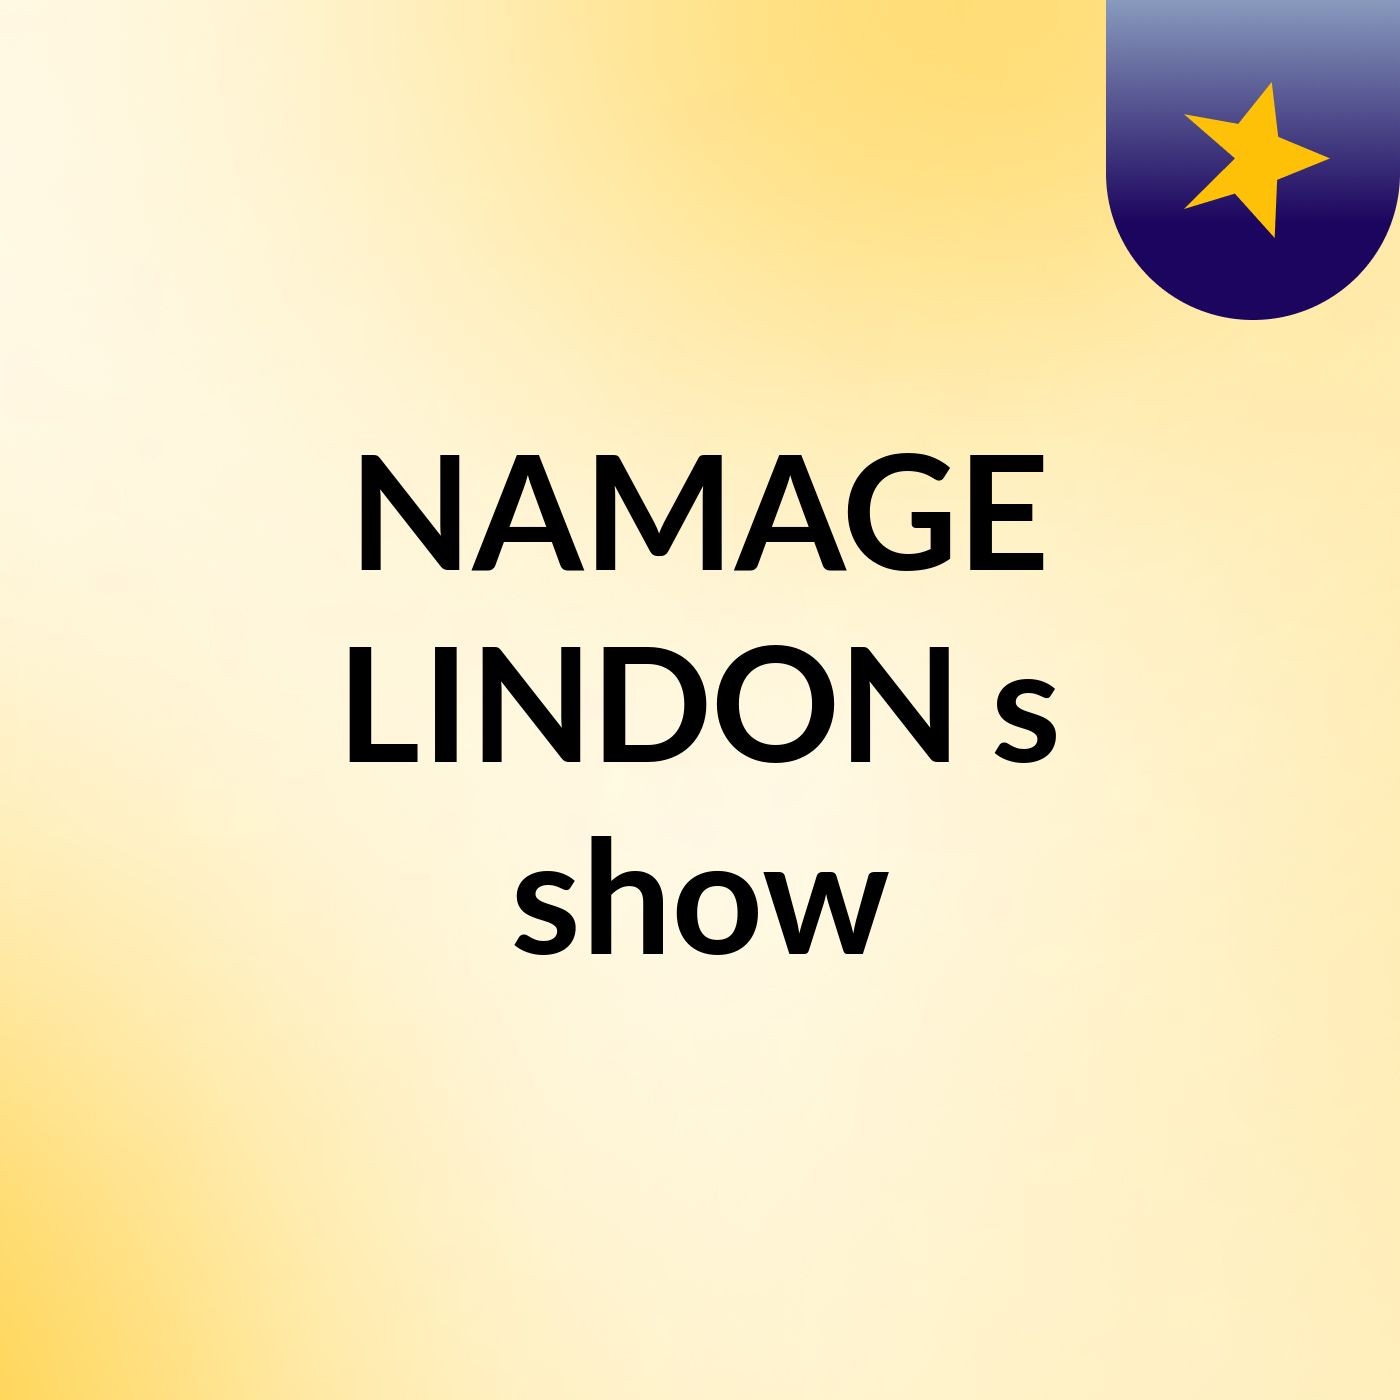 NAMAGE LINDON's show